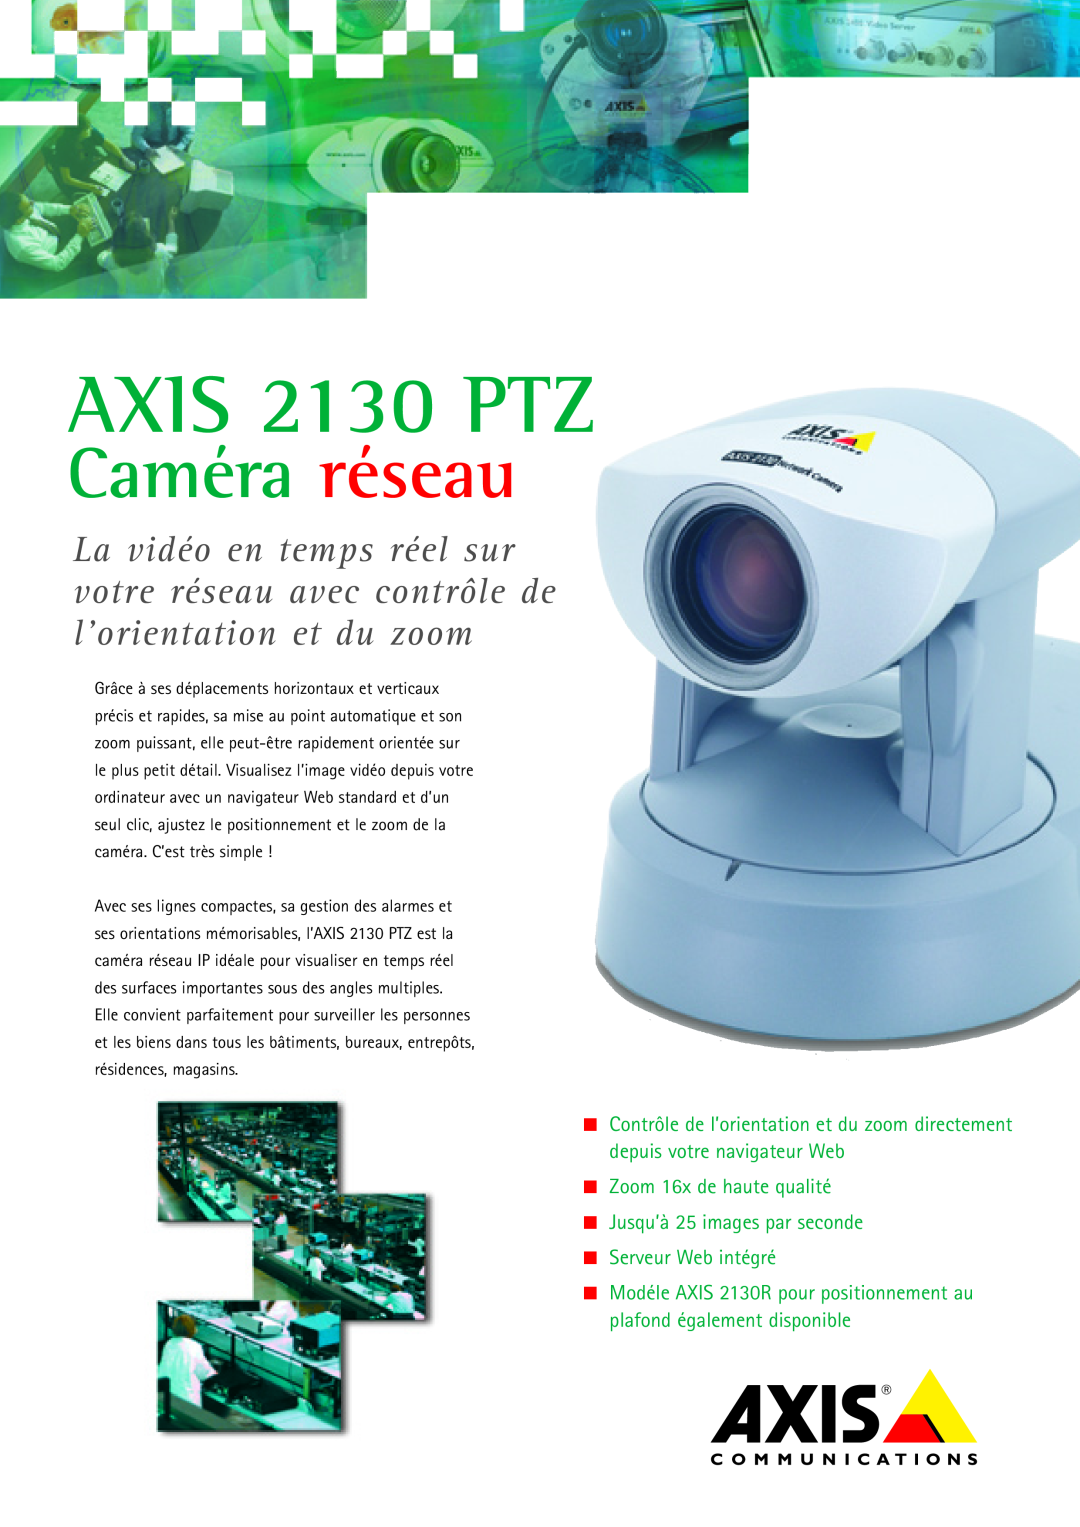 Axis Communications manual AXIS 2130 PTZ, Caméra réseau, Zoom 16x de haute qualité 